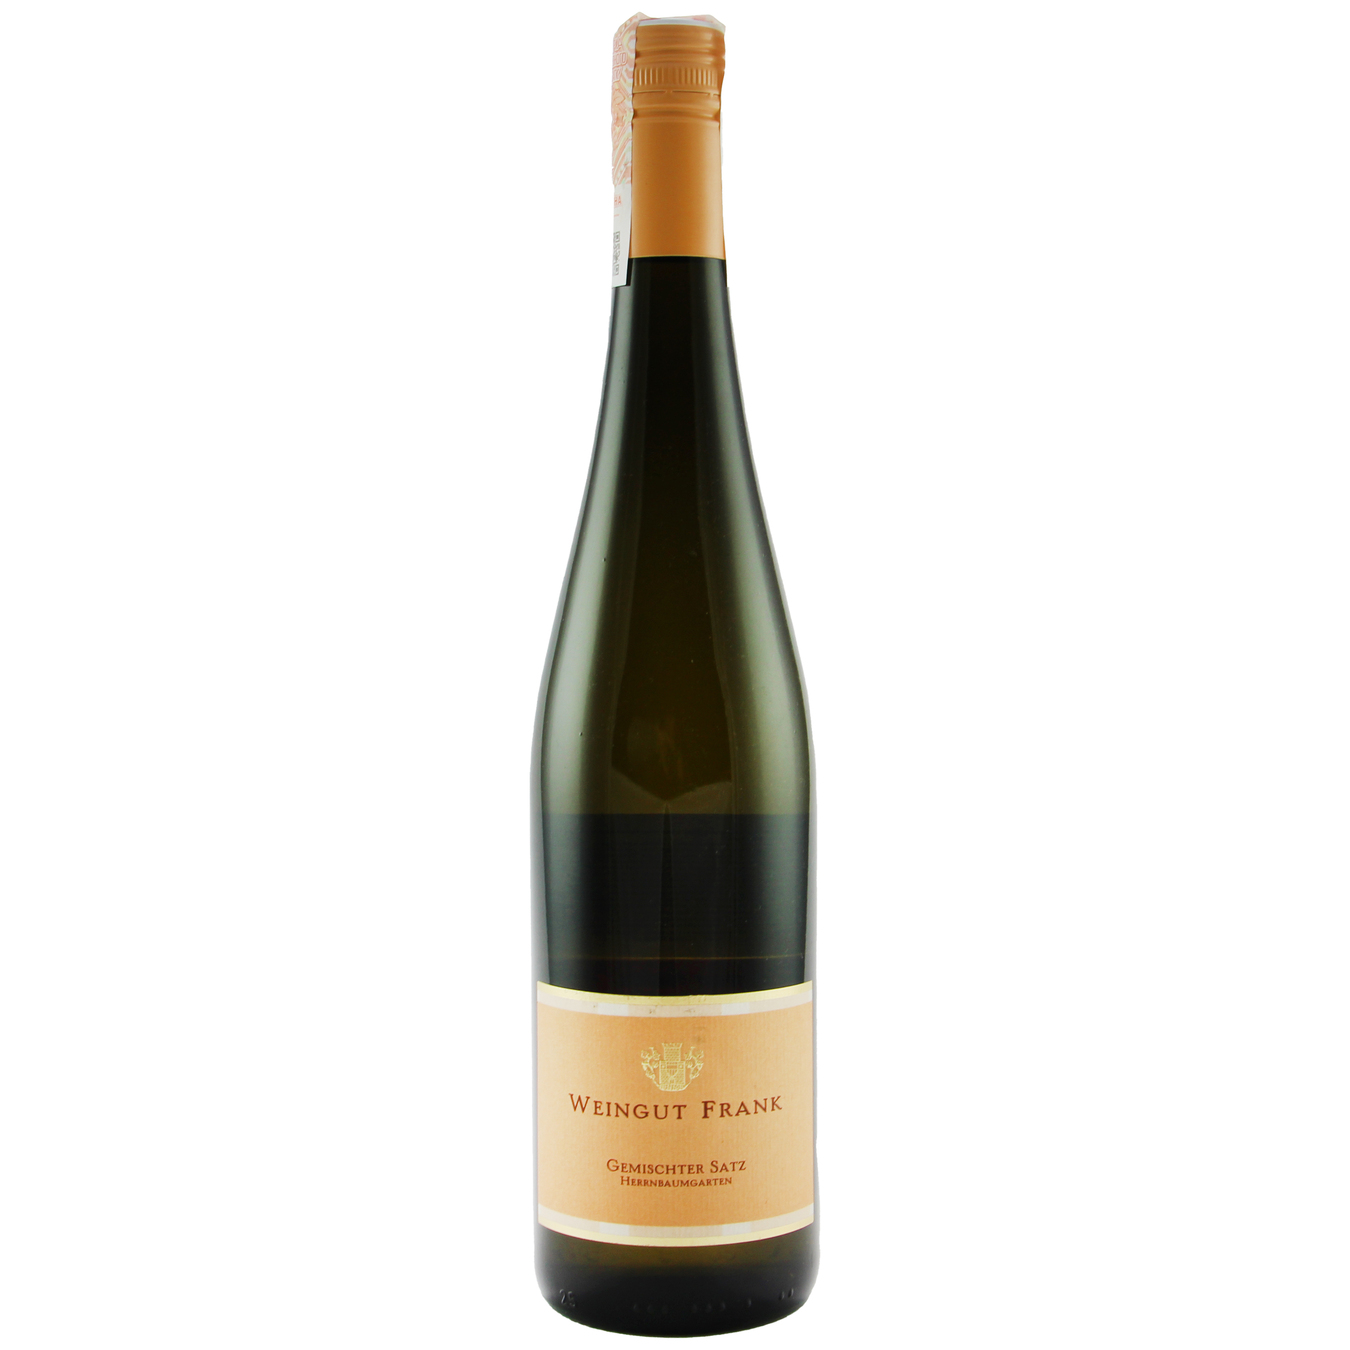 Weingut Frank Gemischter Satz Weinviertel DAC white dry wine 12% 0,75l